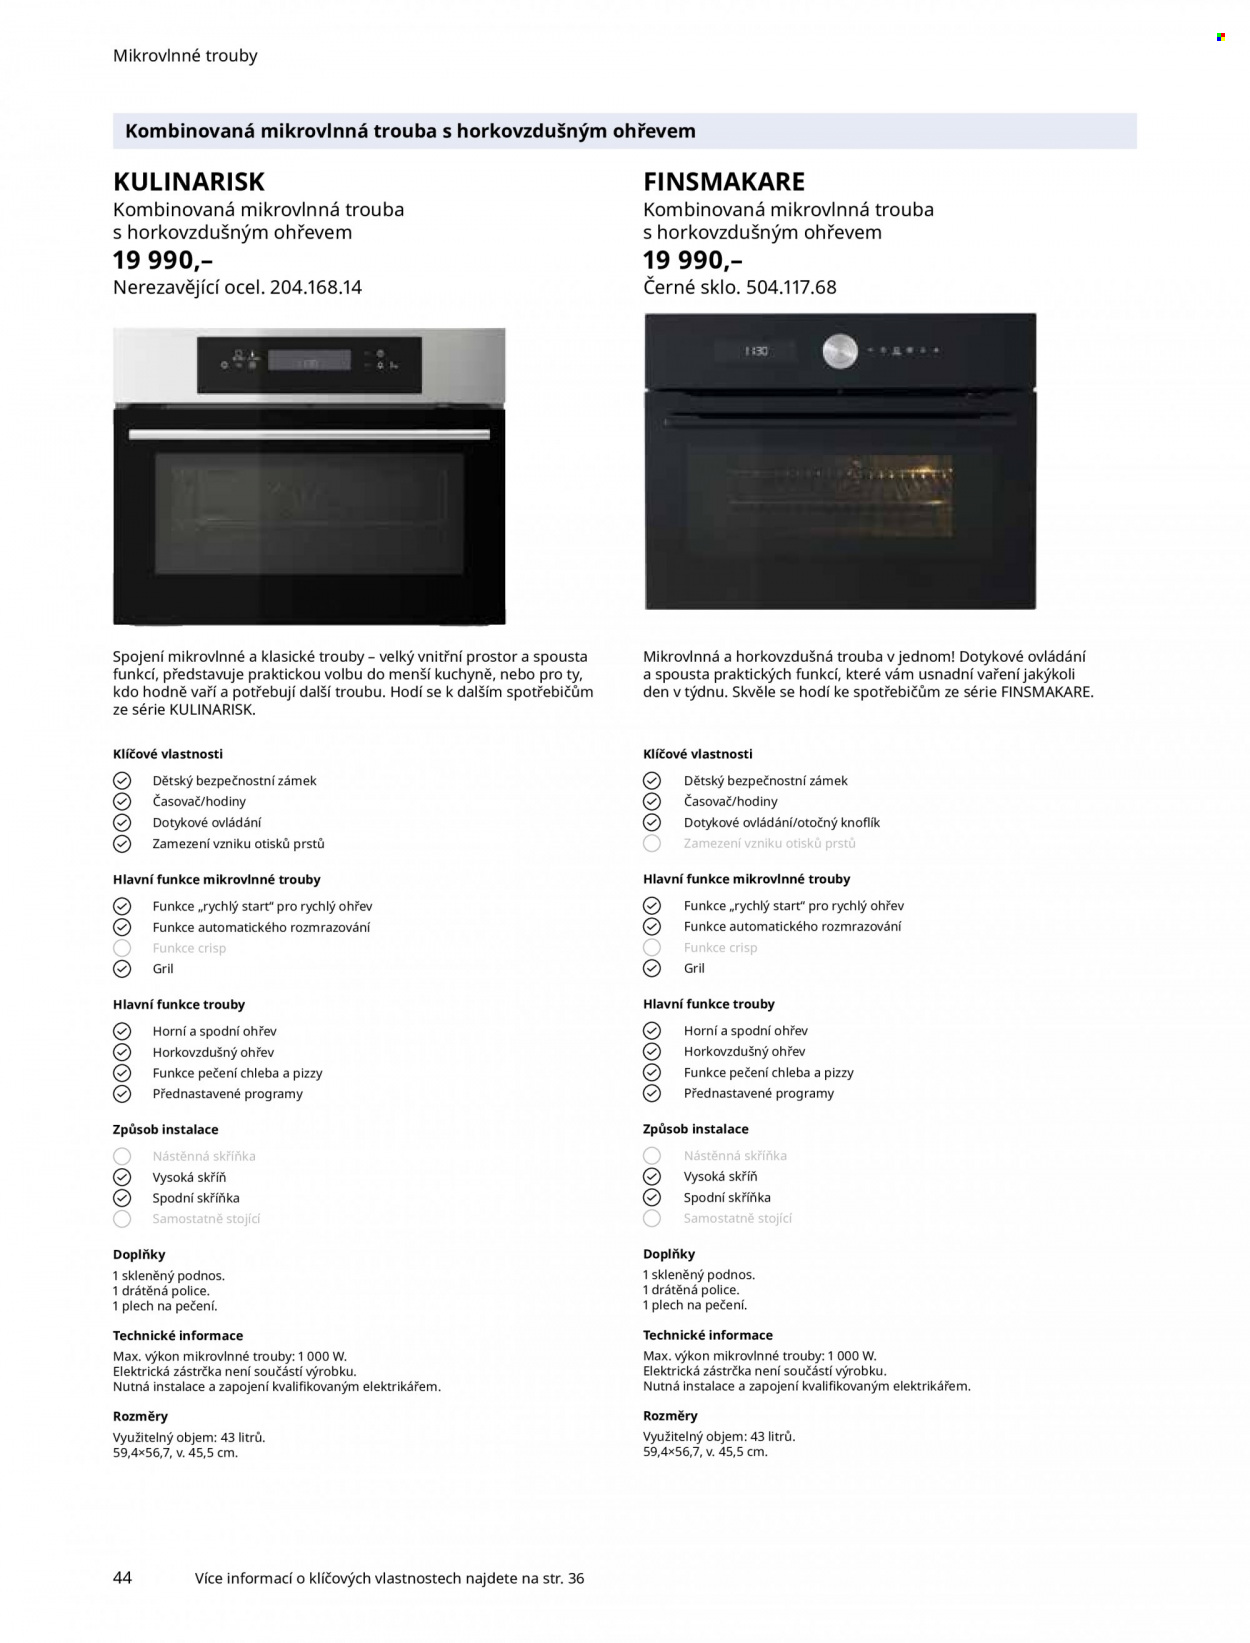 Leták IKEA - Produkty v akci - podnos, plech na pečení, horkovzdušná trouba, mikrovlnná trouba, bezpečnostní zámek. Strana 44.